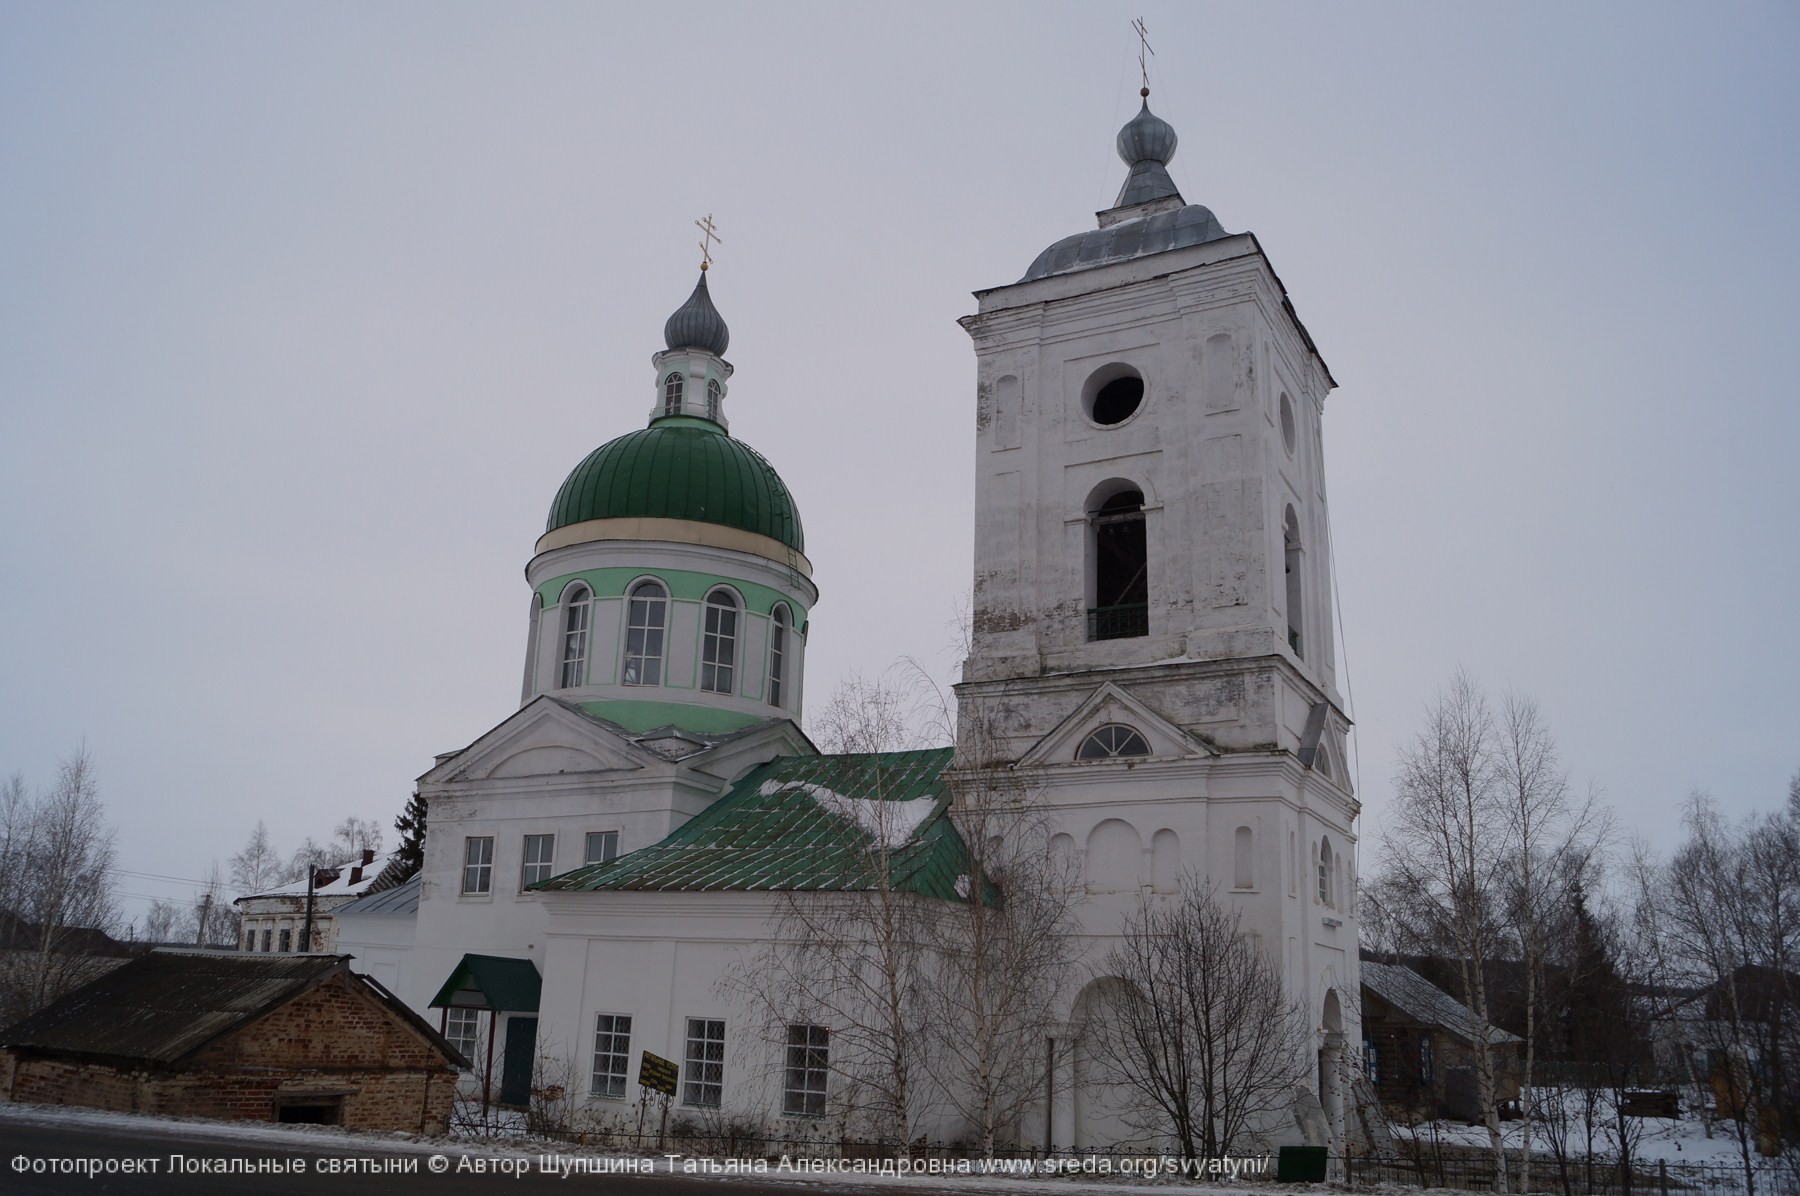 Зеленый купол каменной церкви